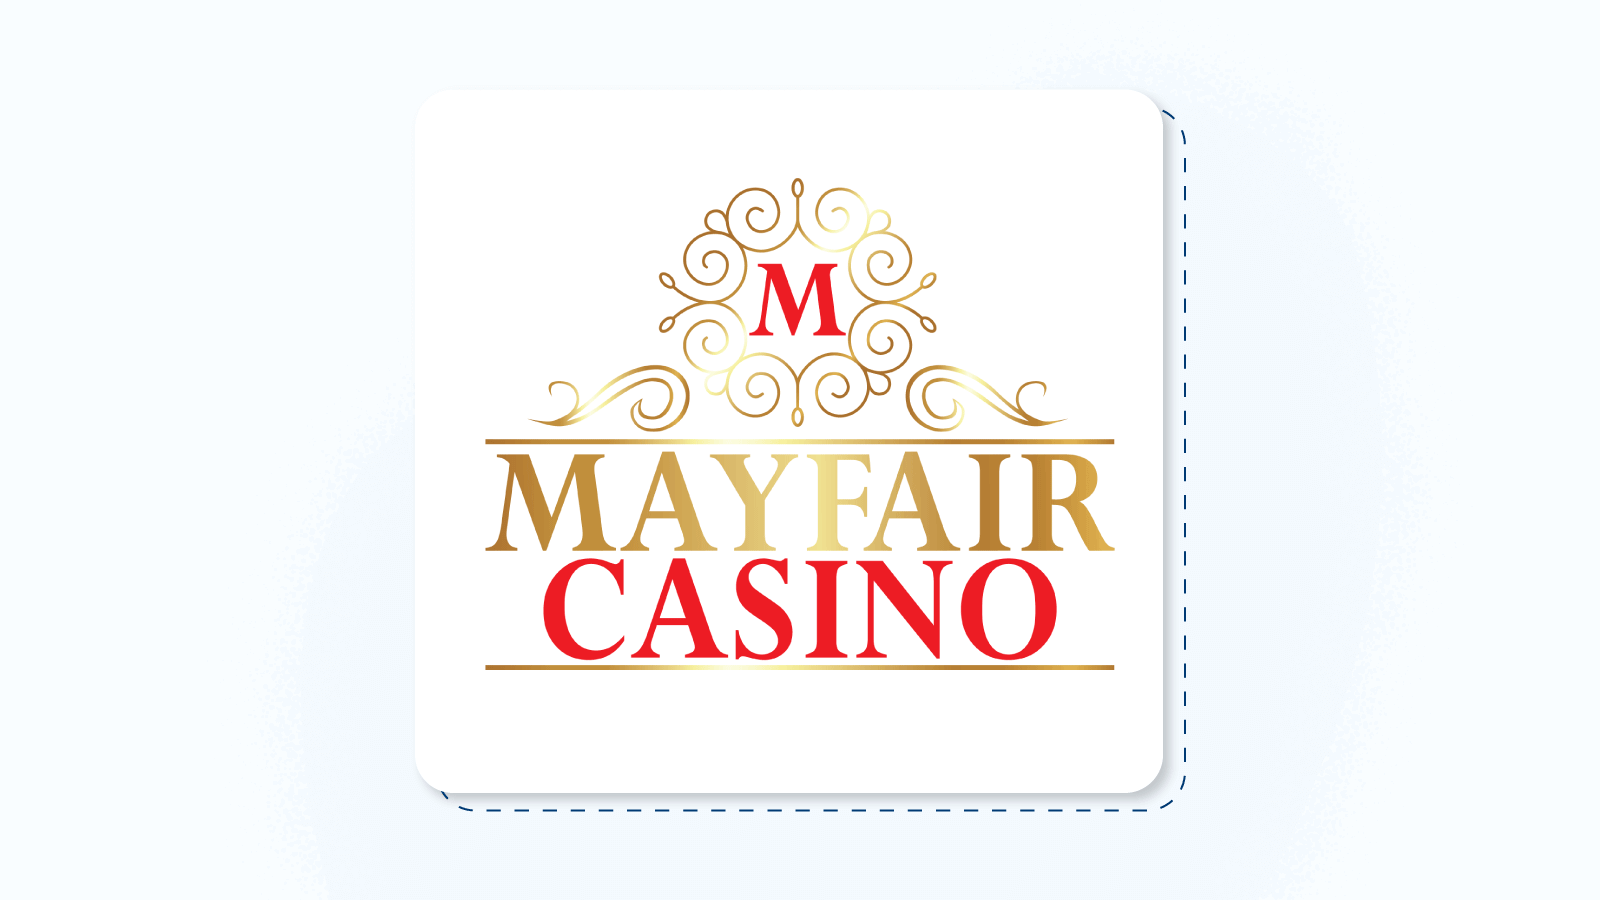 #3 – Mayfair Casino